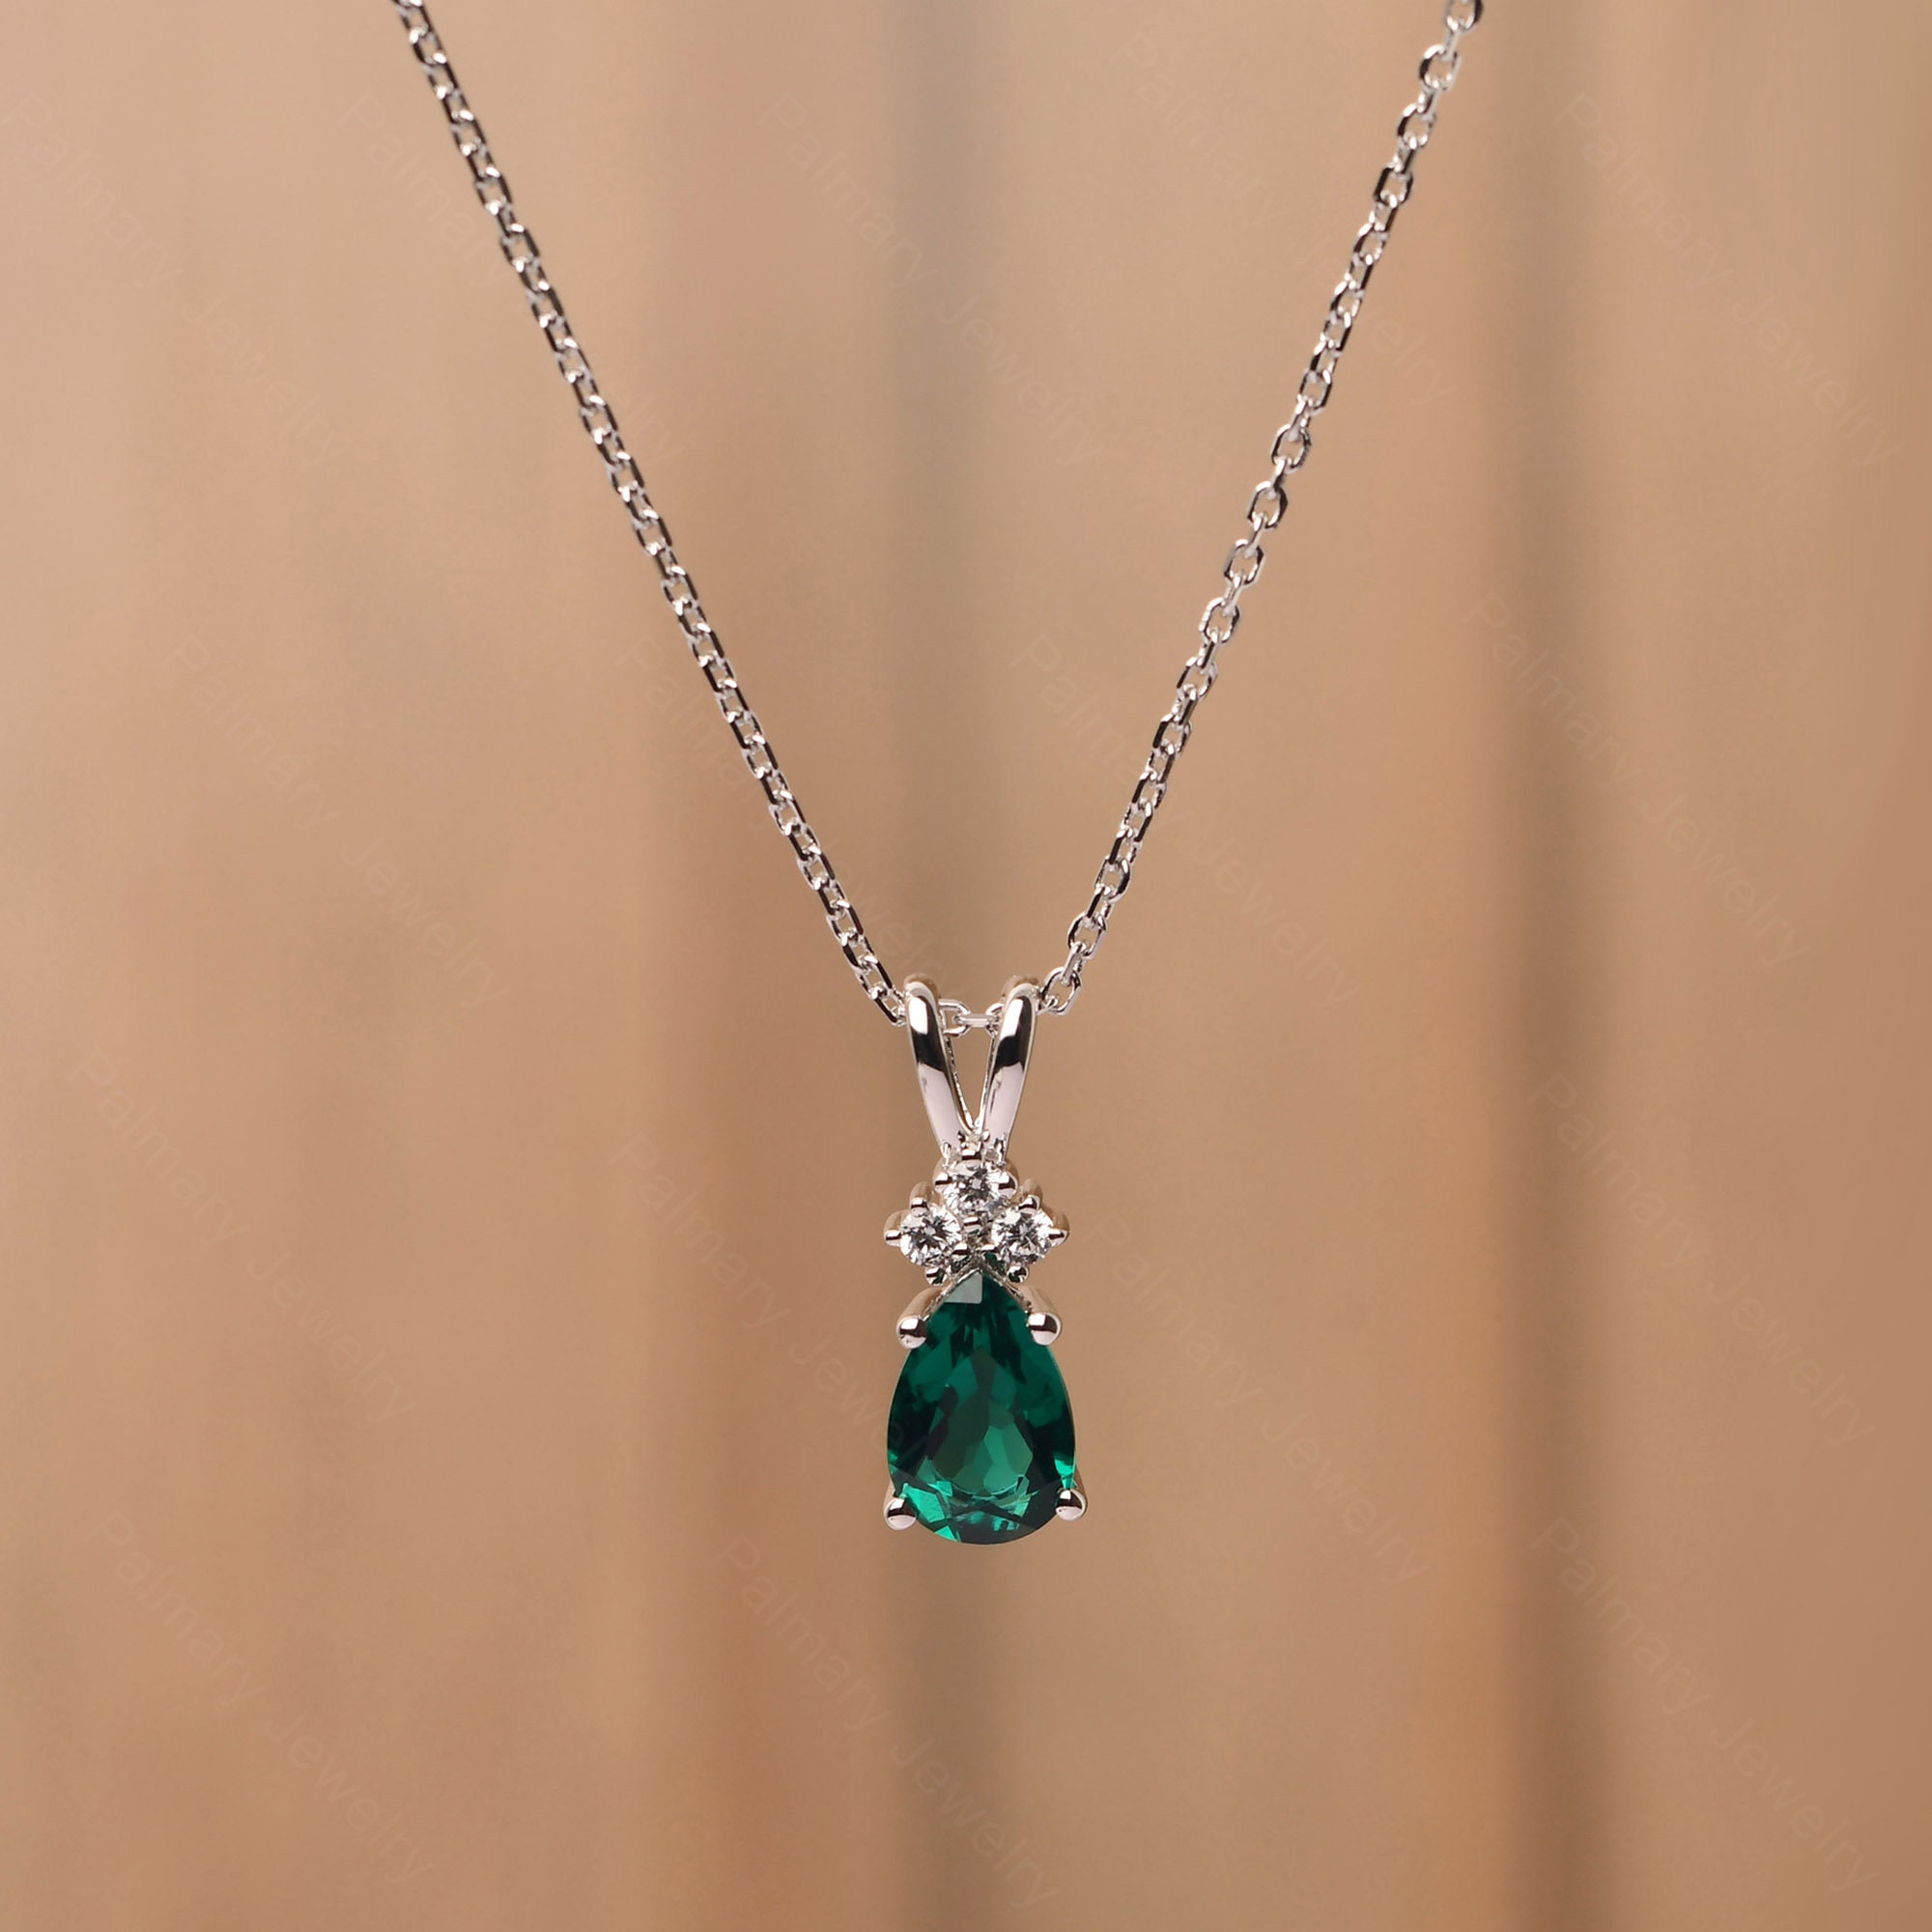 Unique Emerald Pendant Necklace for Women Pear Cut 1.27 Carat - Etsy